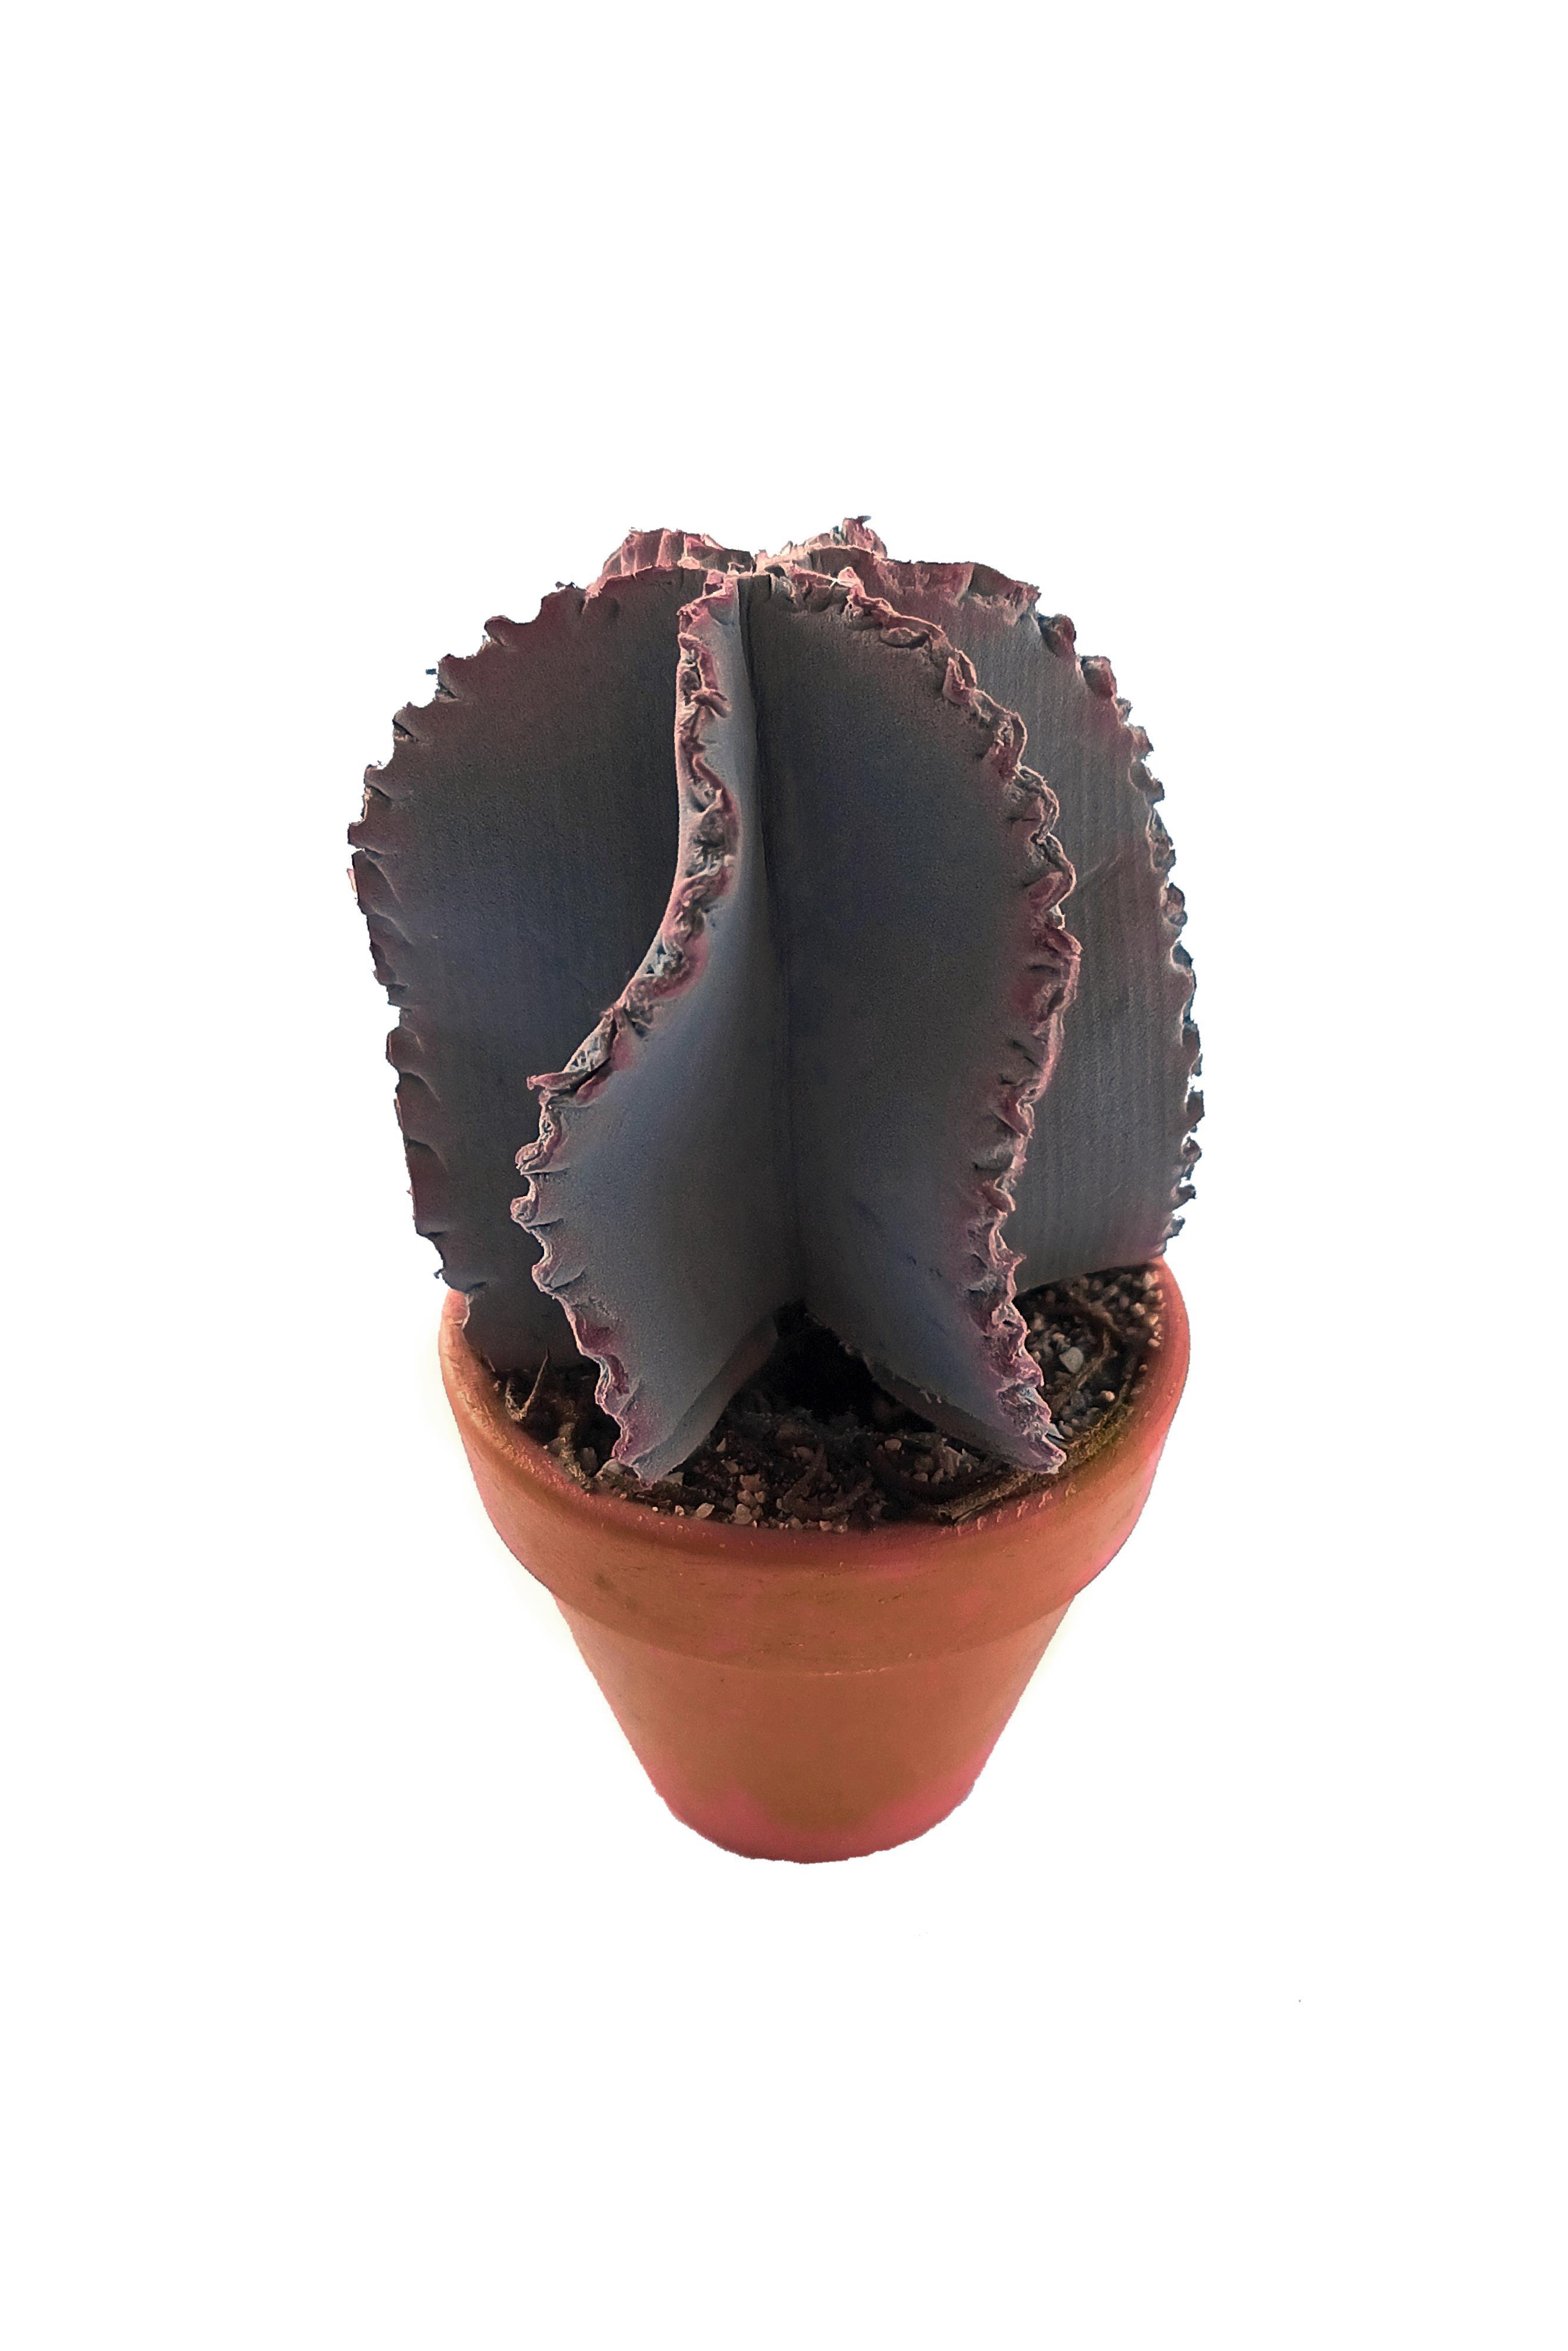 PG057 - Cactus